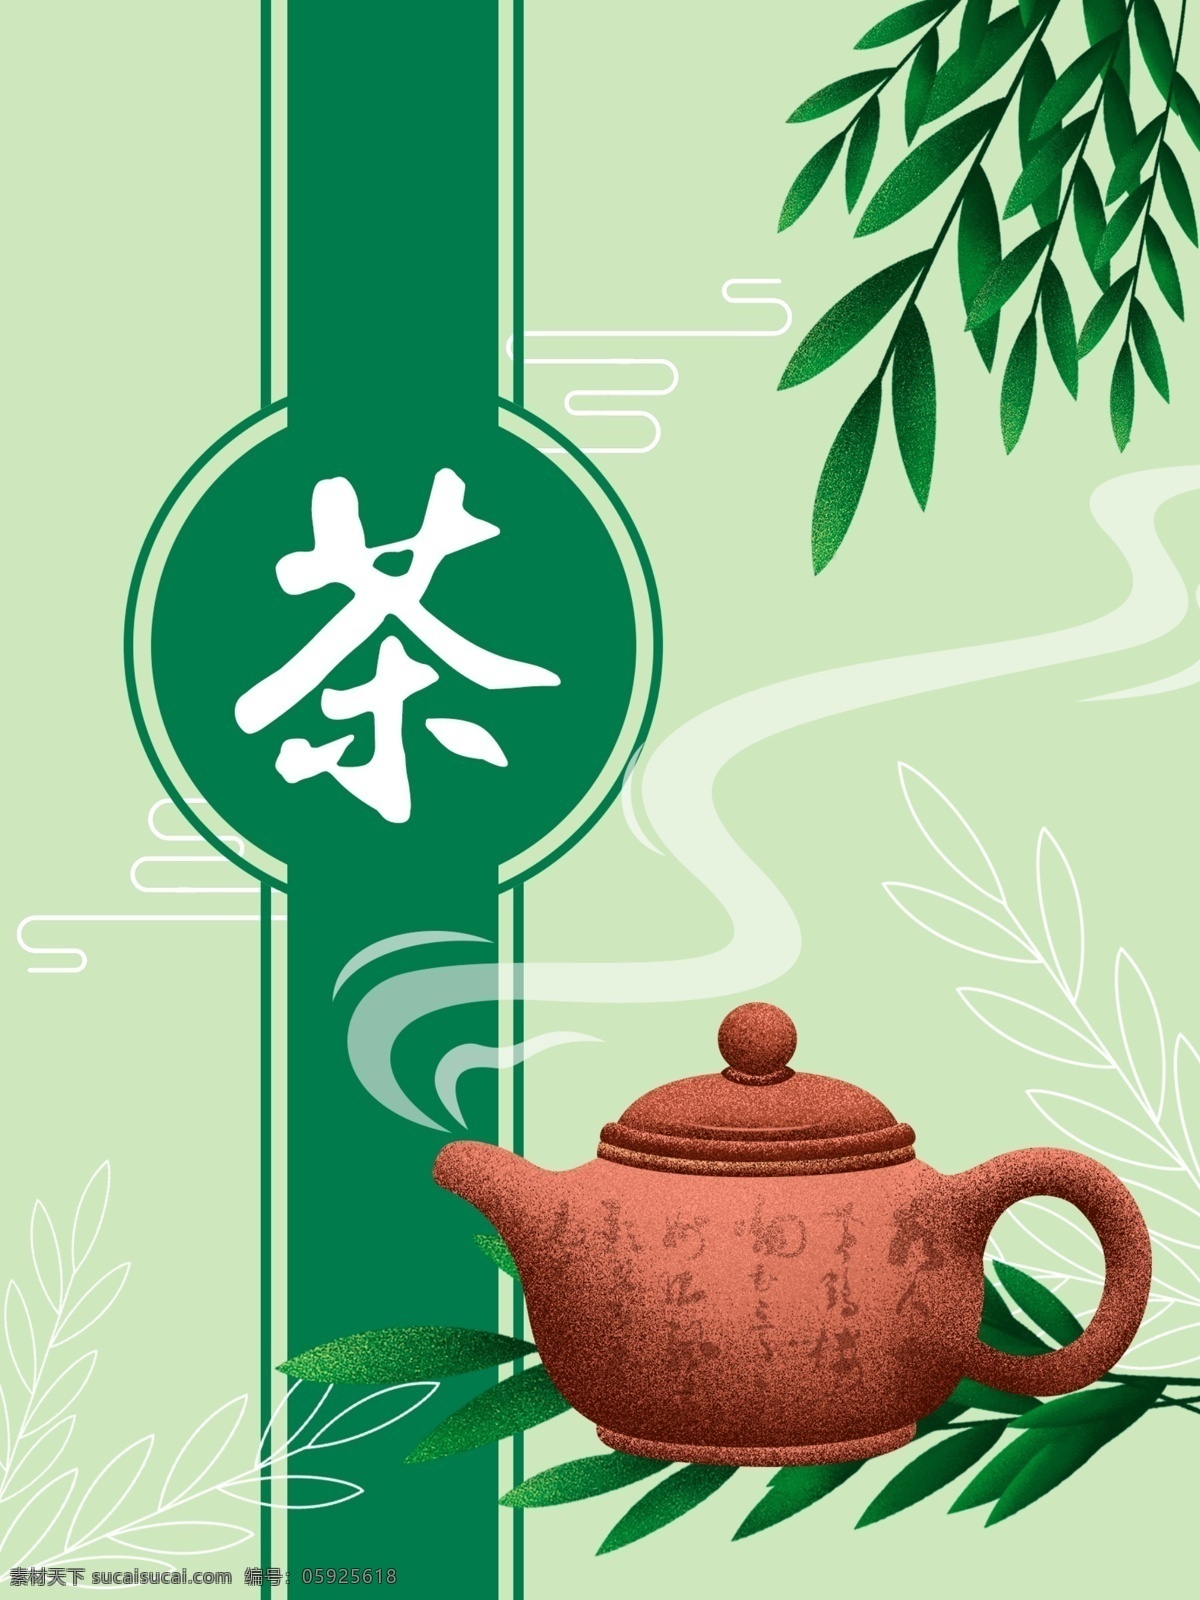 原创 食品包装 茶文化 包装 插画 包装插画 茶 茶叶 食品 碧螺春 西湖龙井 绿茶 红茶